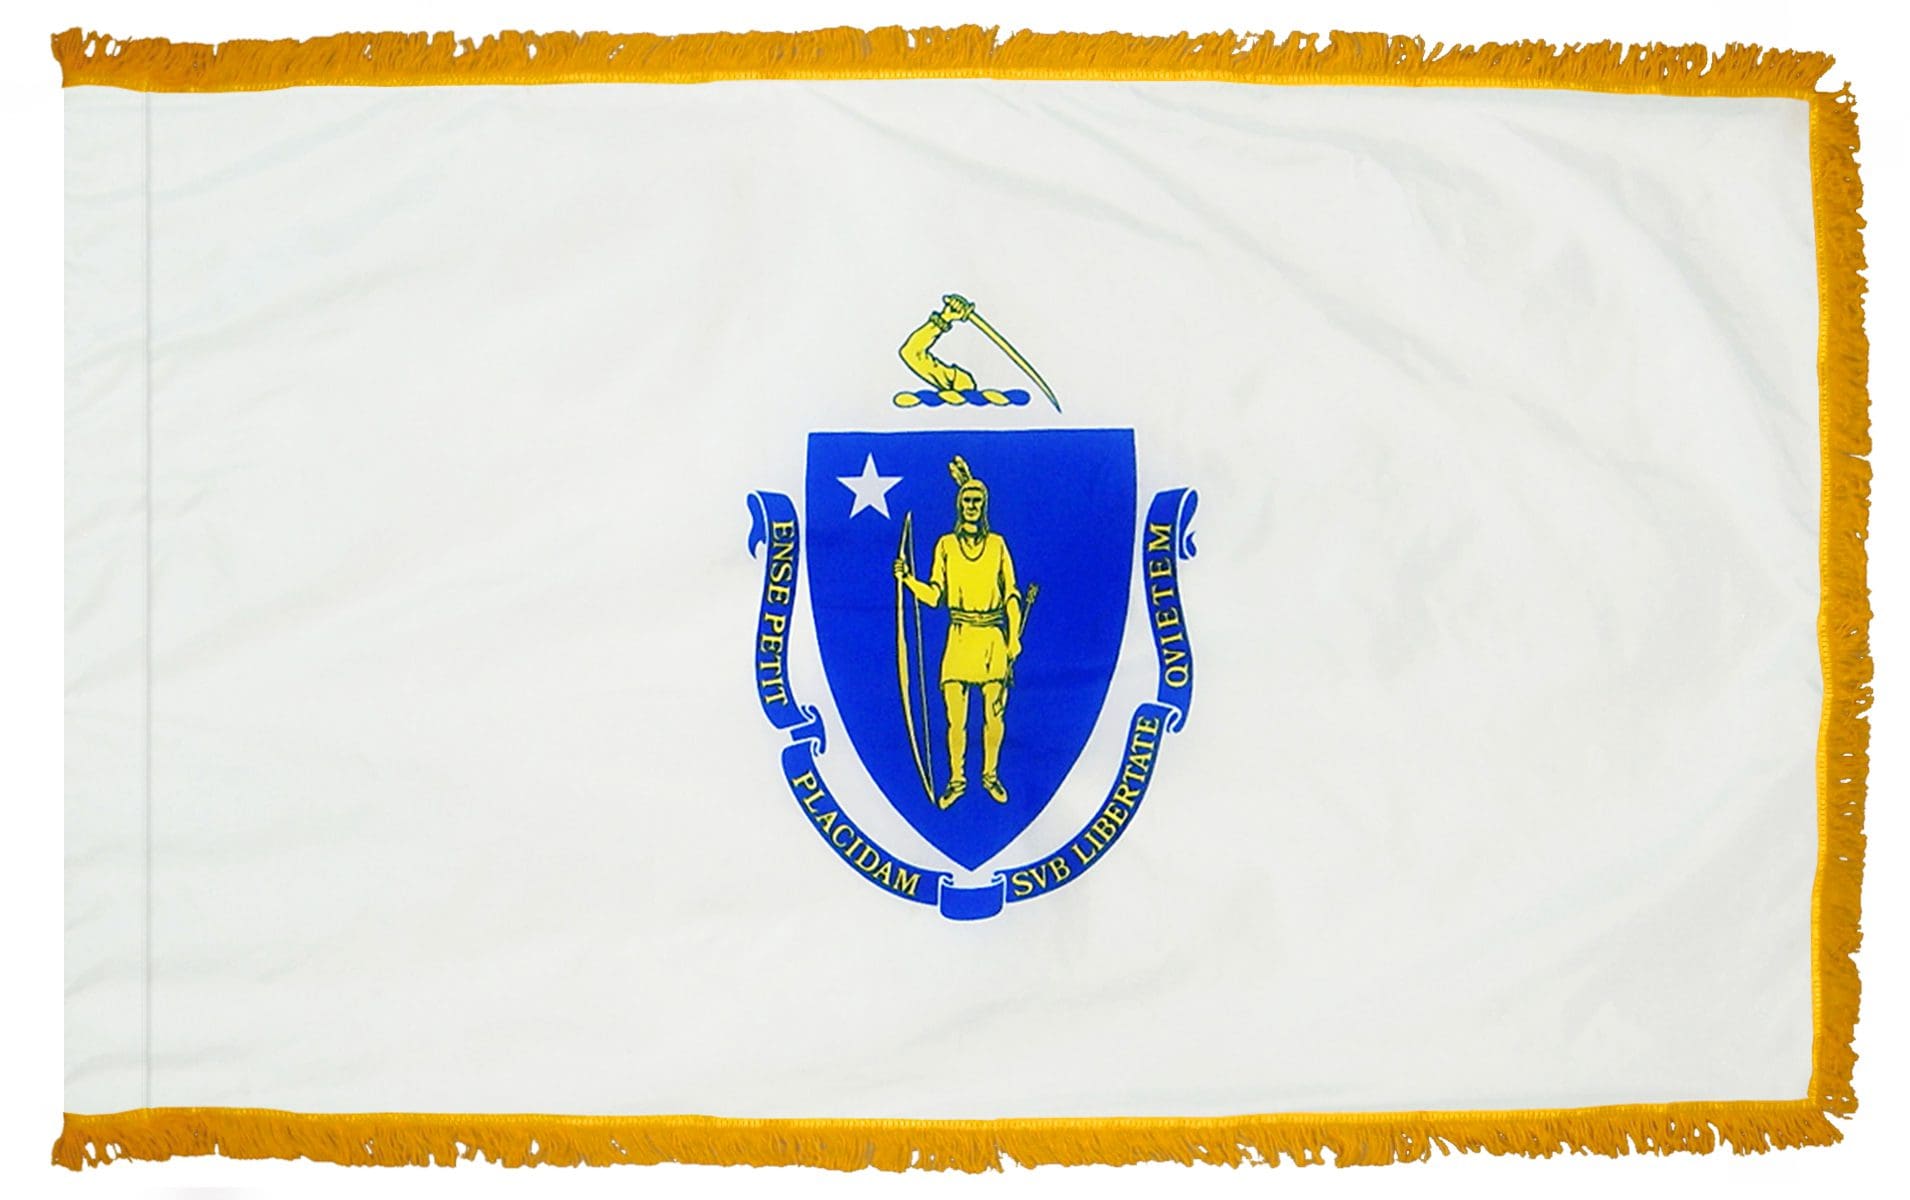 Massachusetts State Flag 3x5 or 4x6 ft. (fringed)